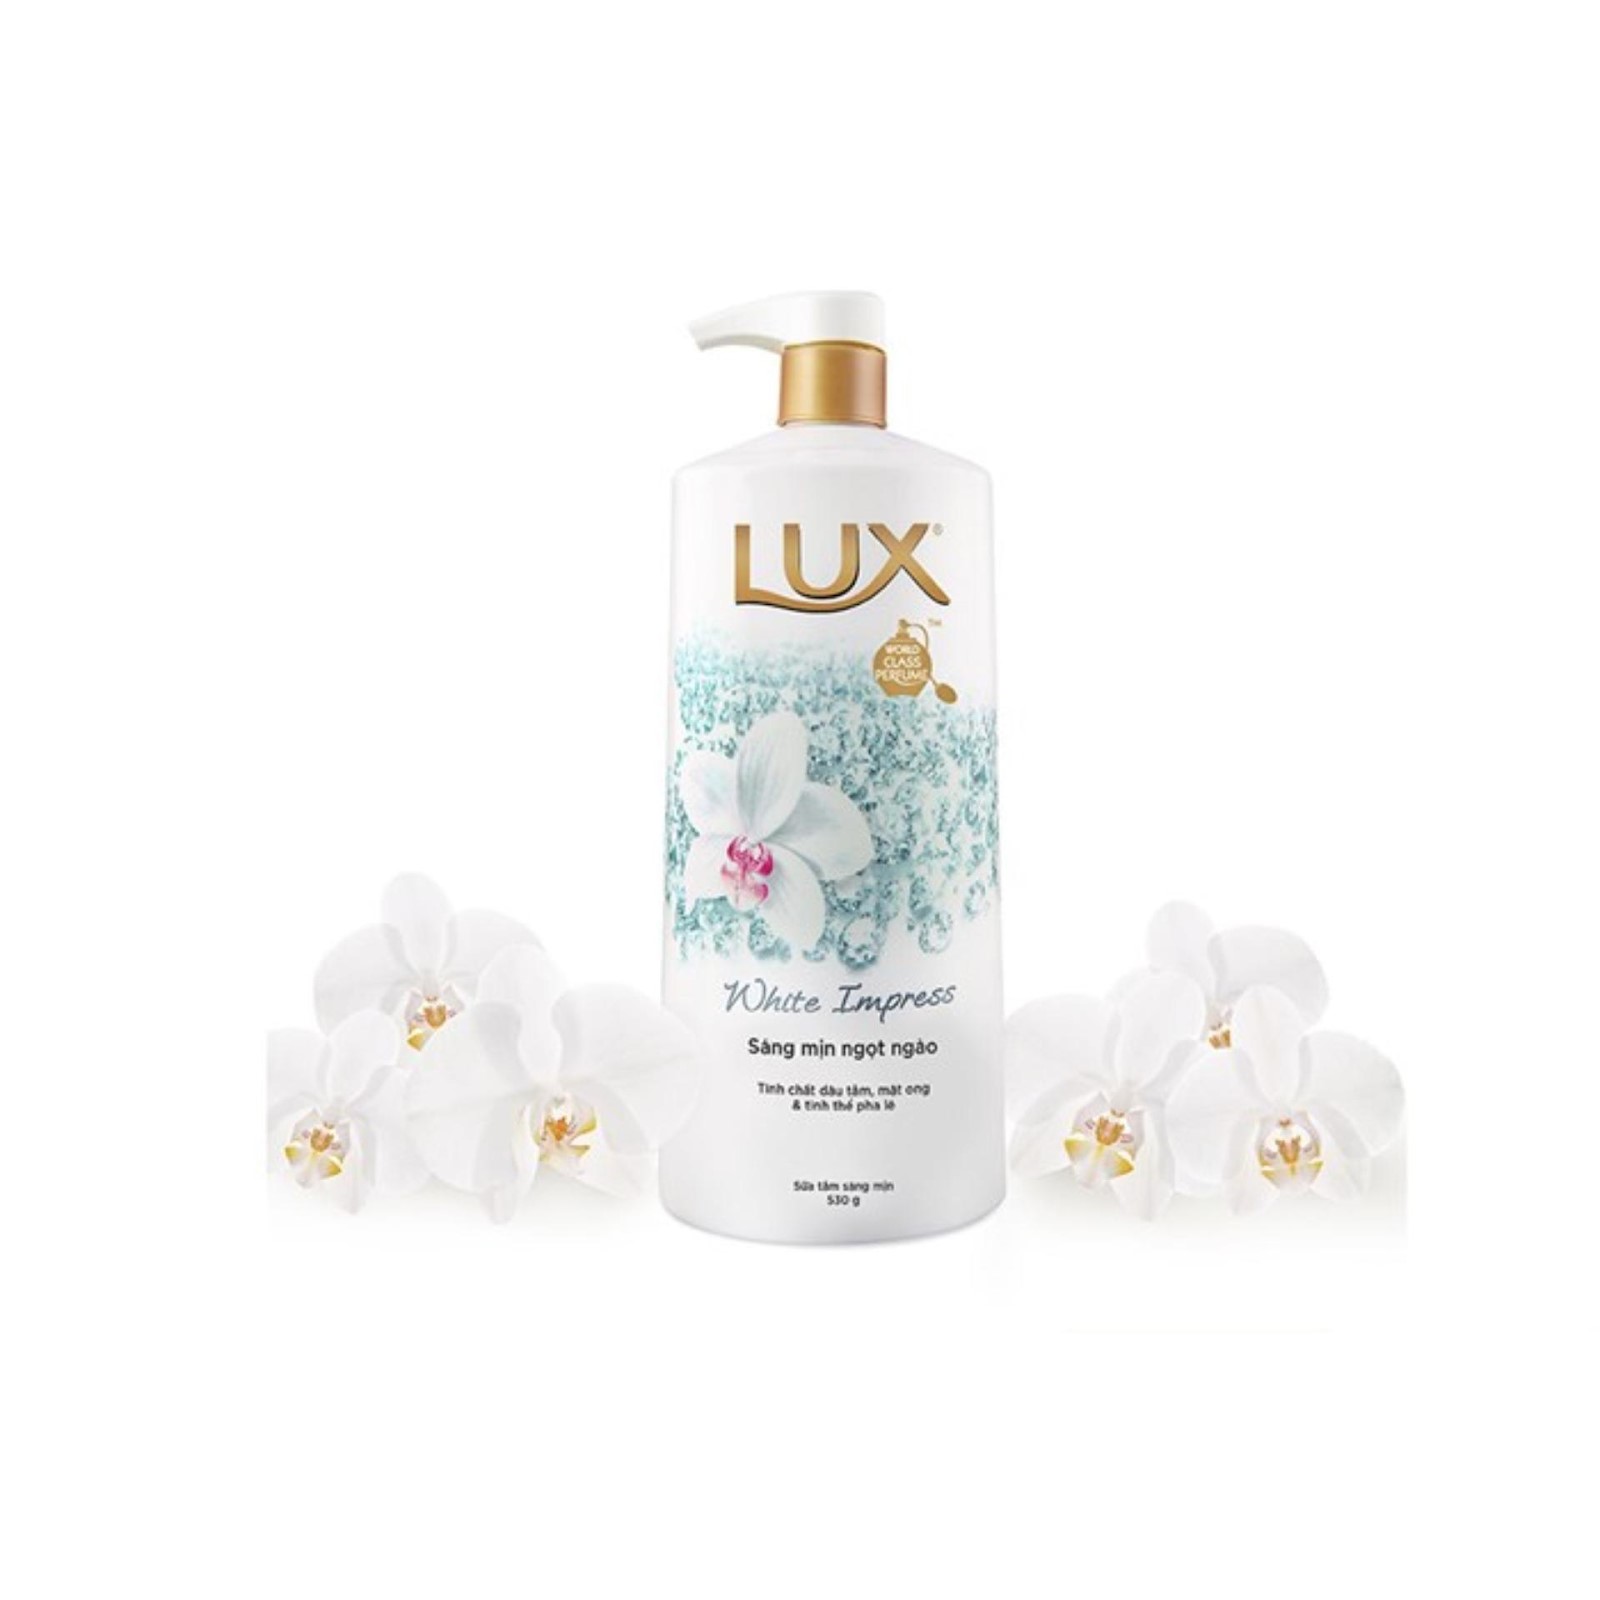 Lux - sản phẩm tắm trắng hiệu quả, sữa tắm được ưa chuộng nhất hiện nay